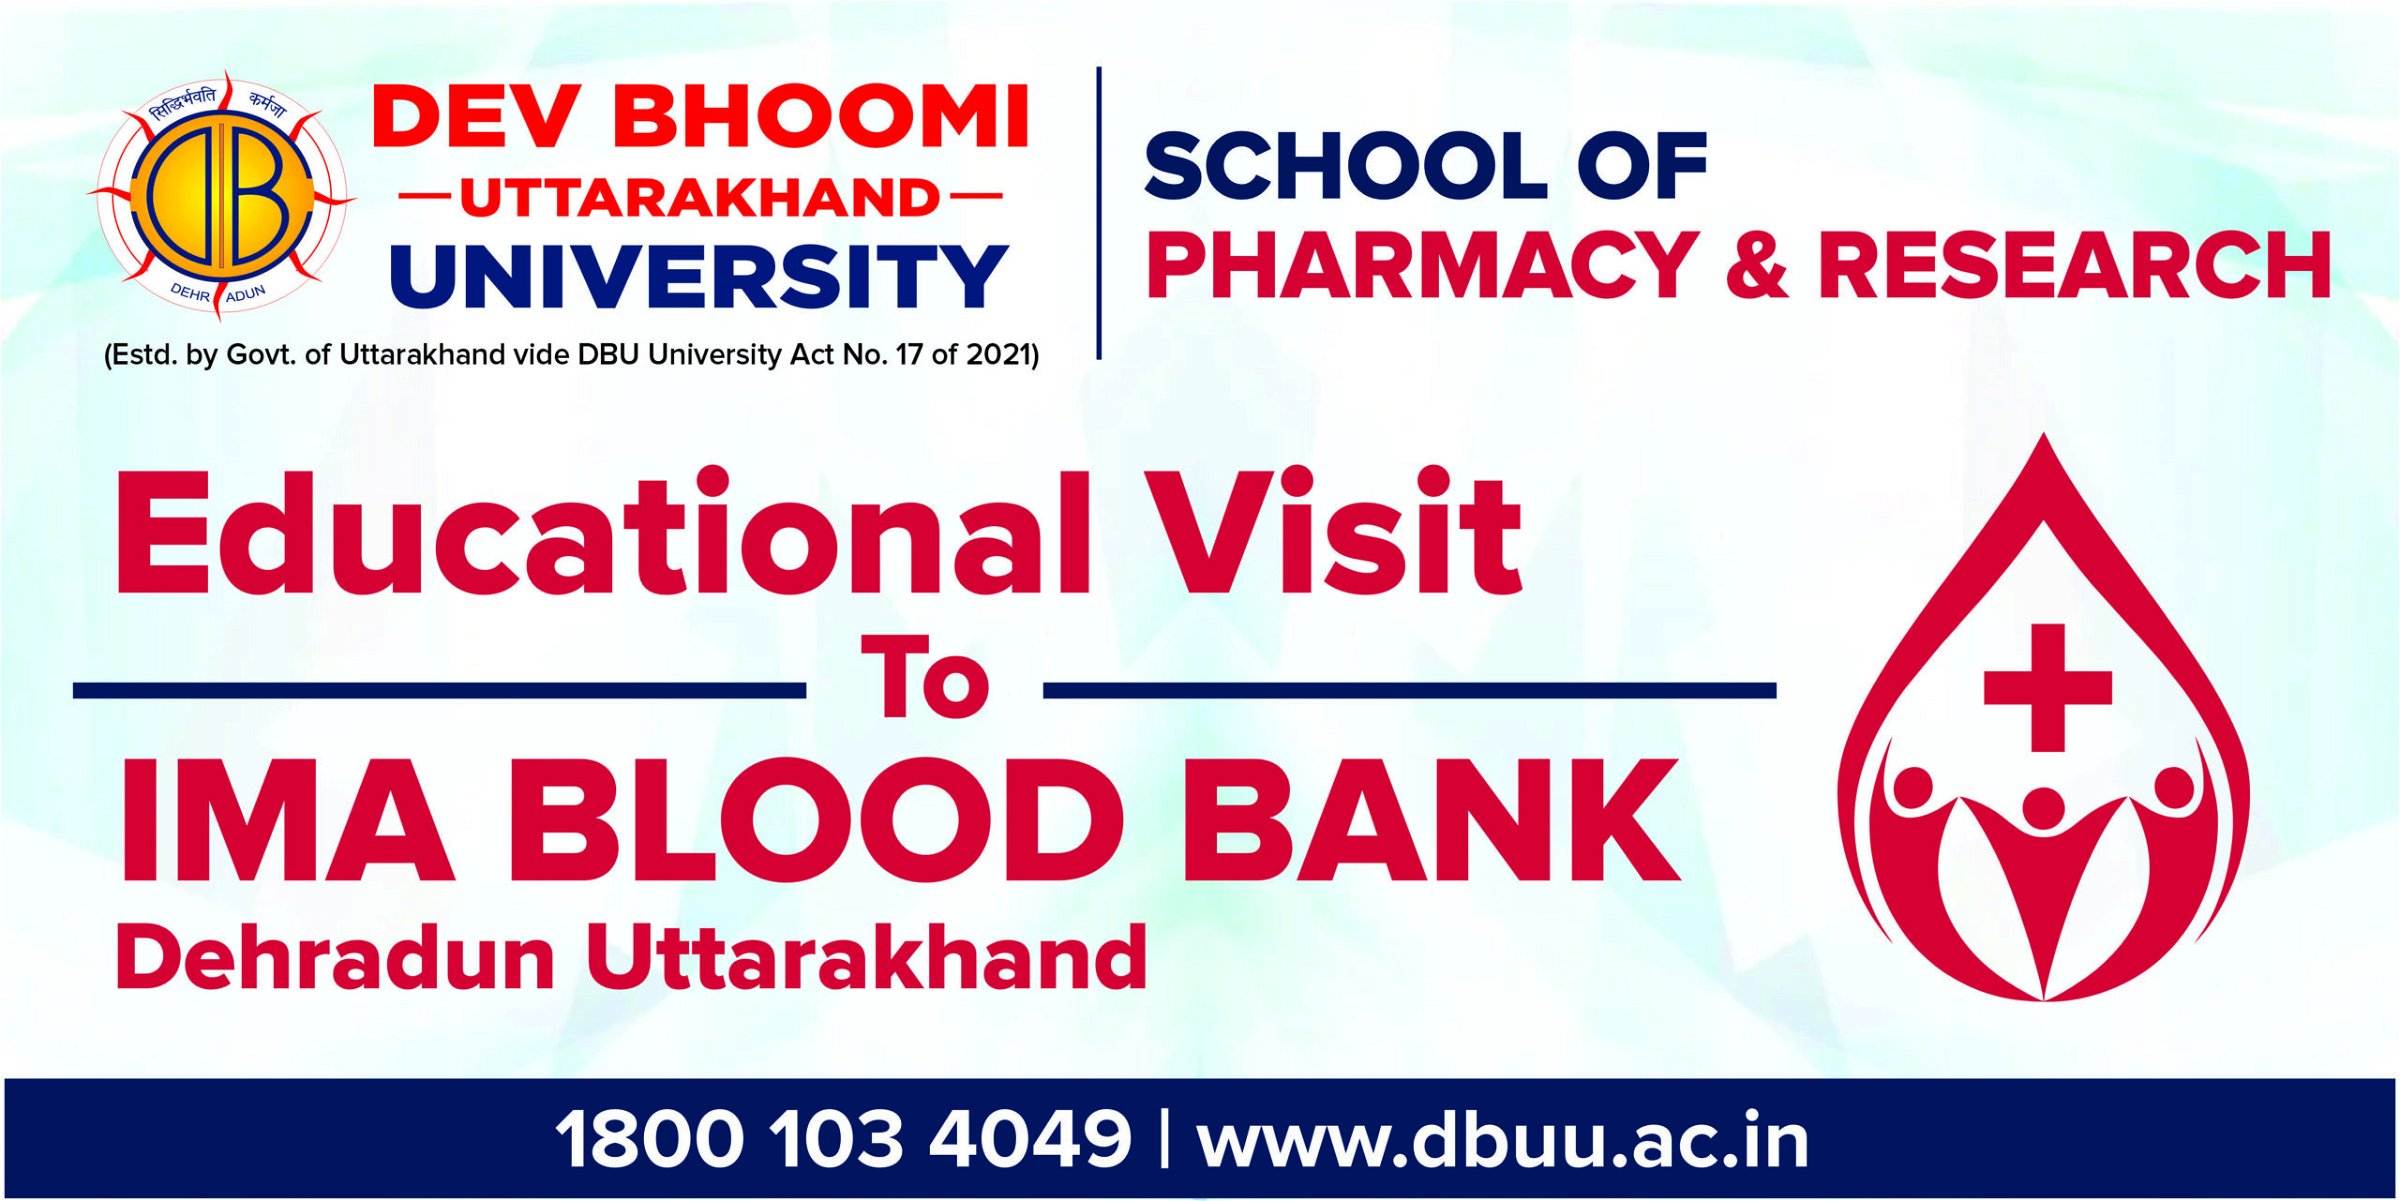 Educational Visit of Pharmacy Students to IMA BLOOD  BANK OF UTTARAKHAND